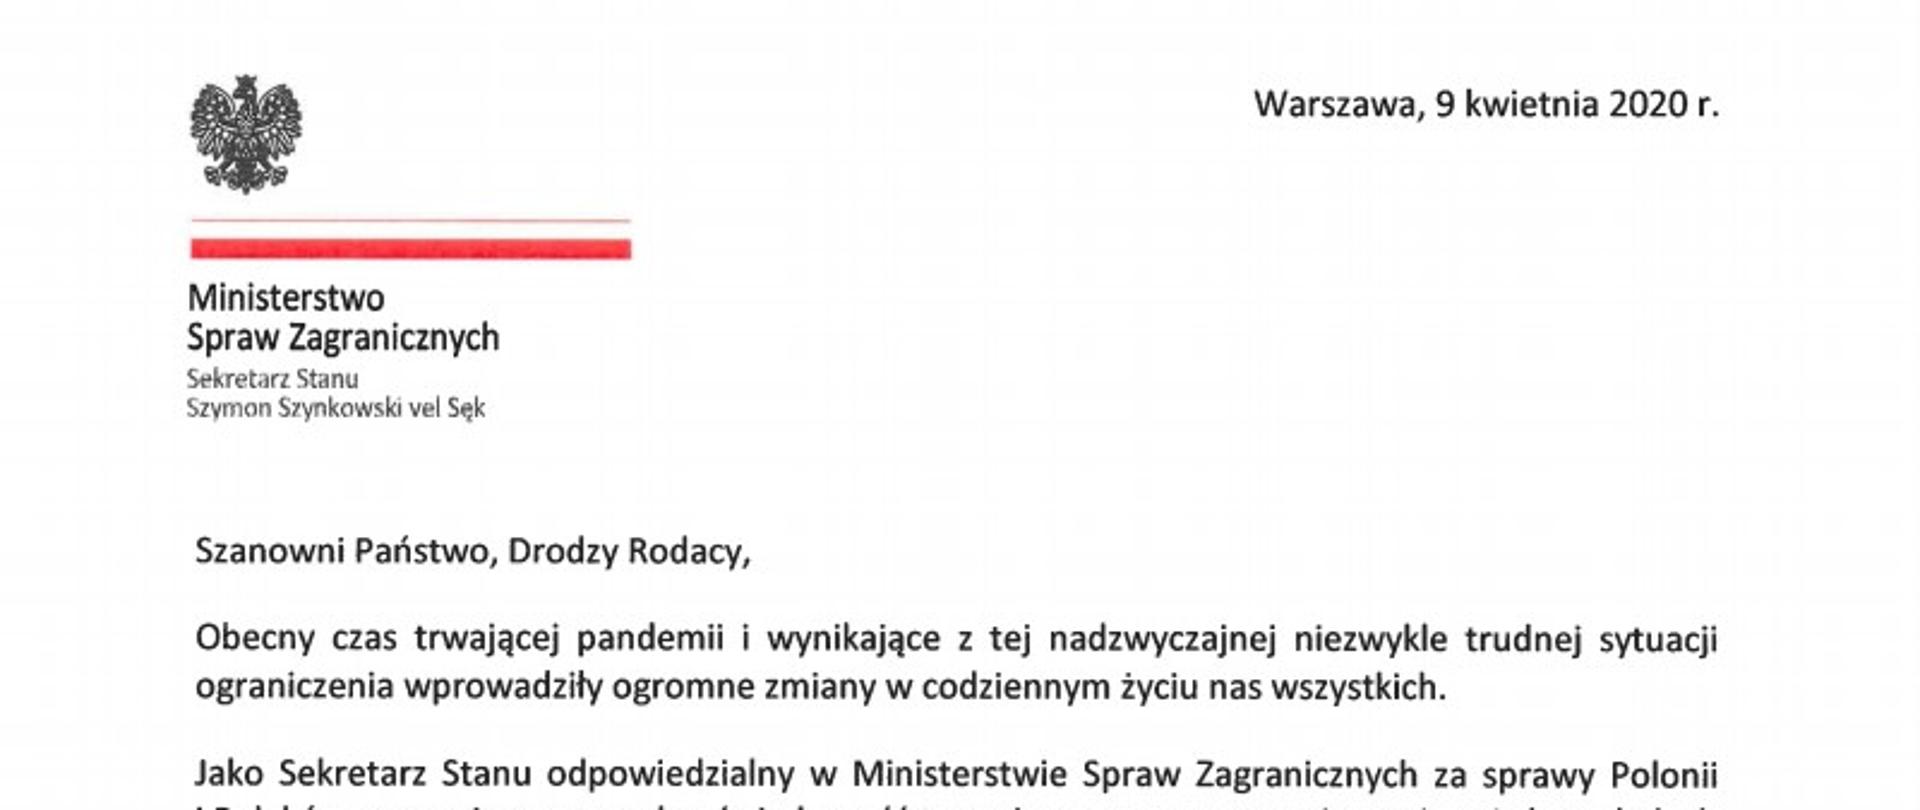 Zdjęcie pierwszej strony listu Ministra Szynkowskiego vel Sęka